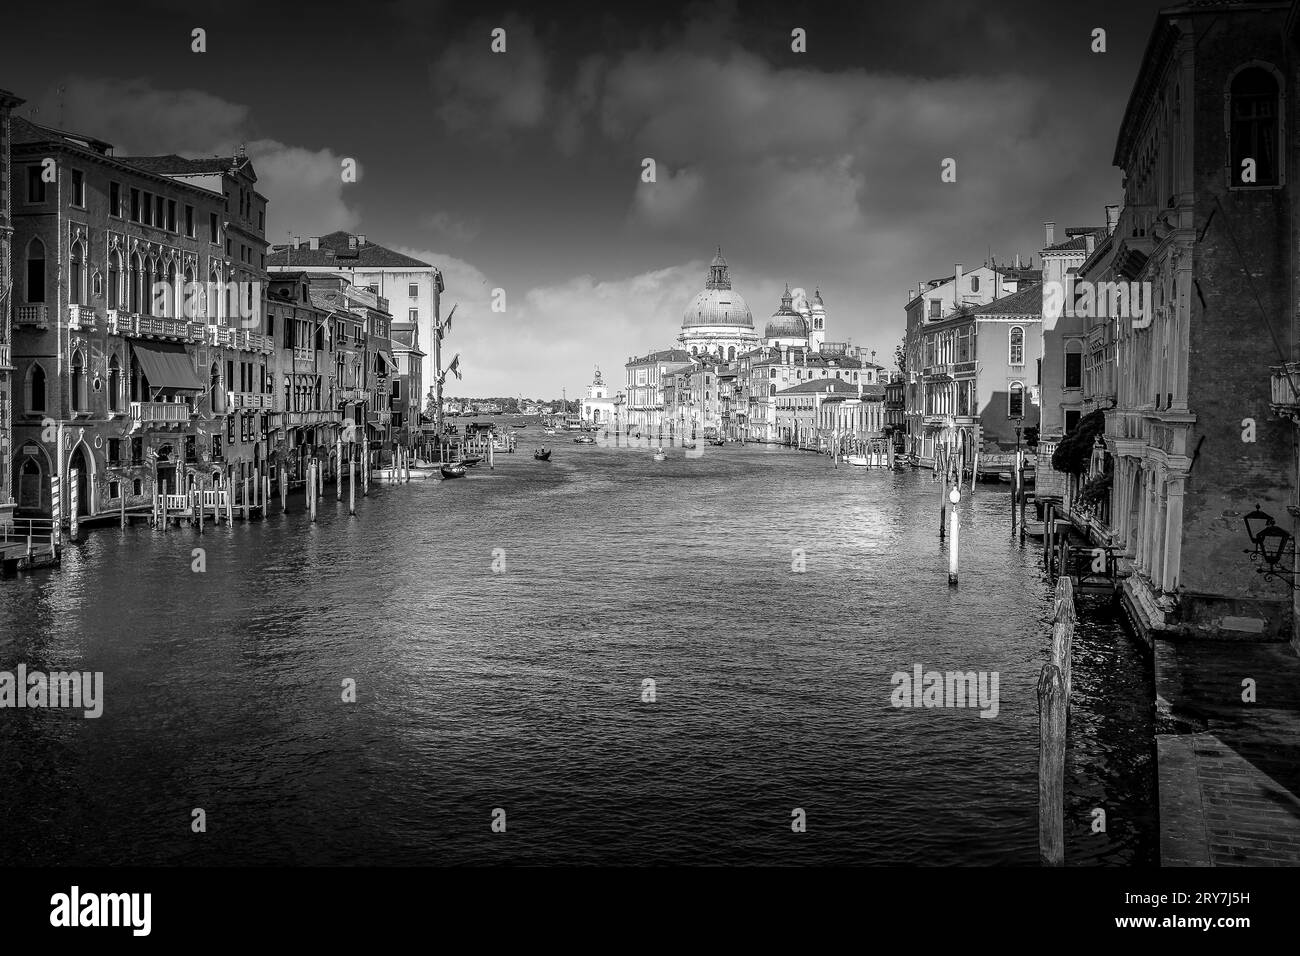 Venise Italie en Monochrome : Dreamy Cityscape Print pour une lune de miel mémorable ou cadeau de mariage Banque D'Images